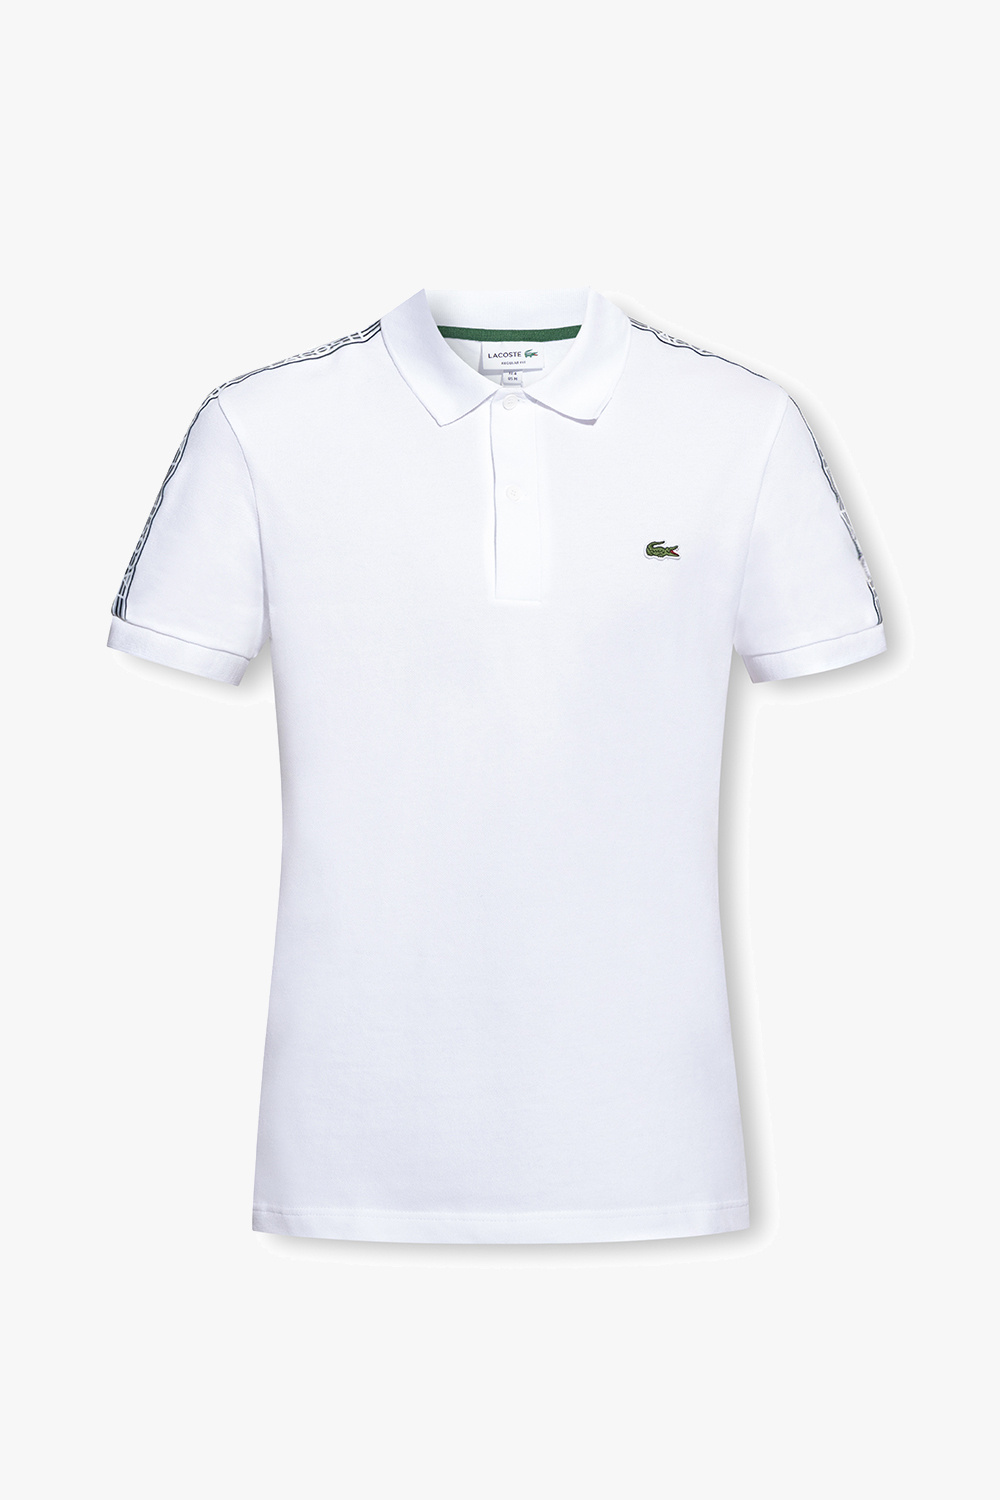 Lacoste polo felix shirt with logo